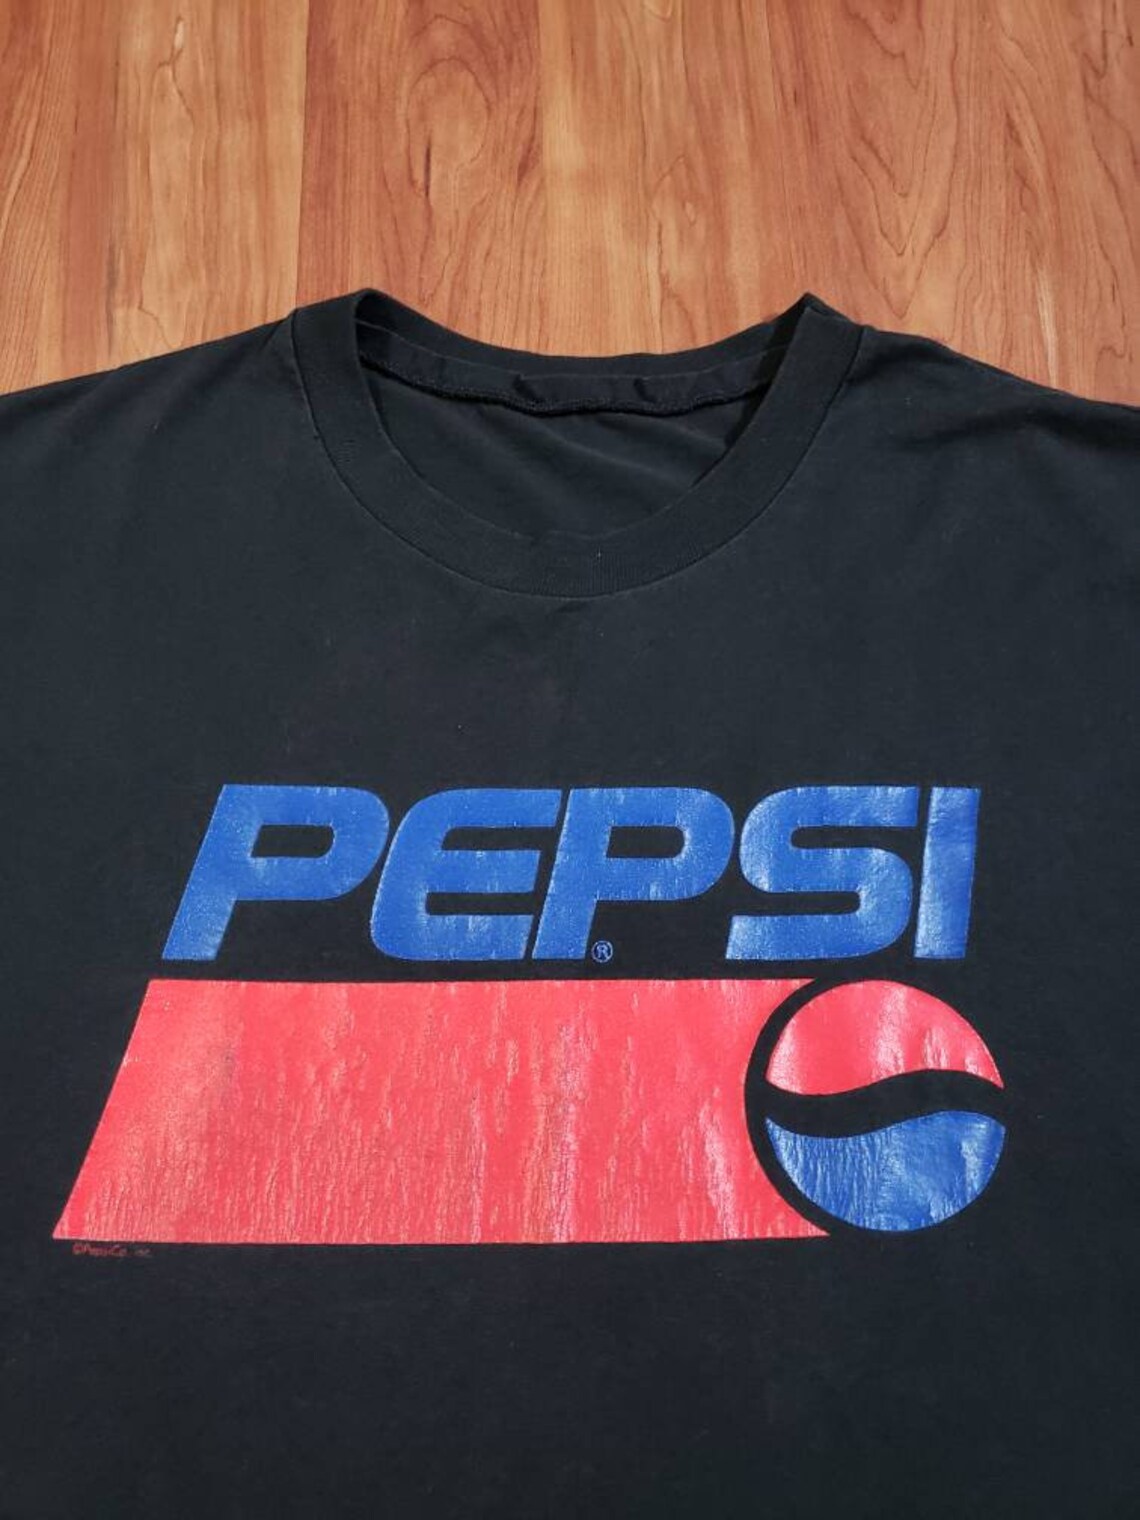 Vintage 1990's black Pepsi soda drink tshirt single stitch | Etsy